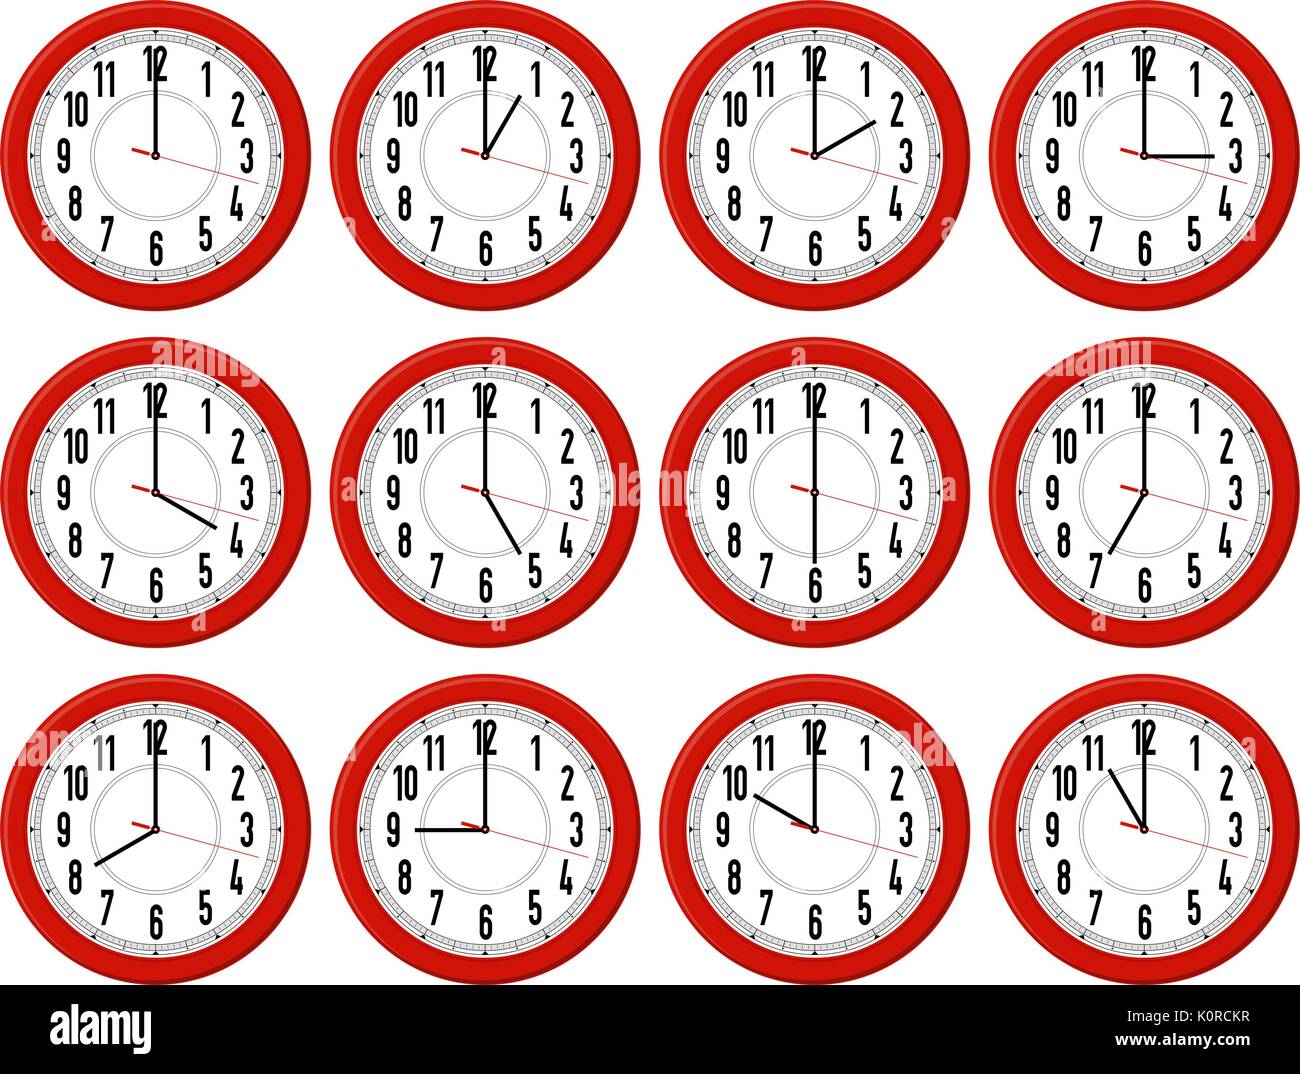 Часы показывающие разное время. Циферблаты с разным временем. Циферблат часов с разным временем. Циферблаты с разным временем для детей. Часы циферблат Разное время.